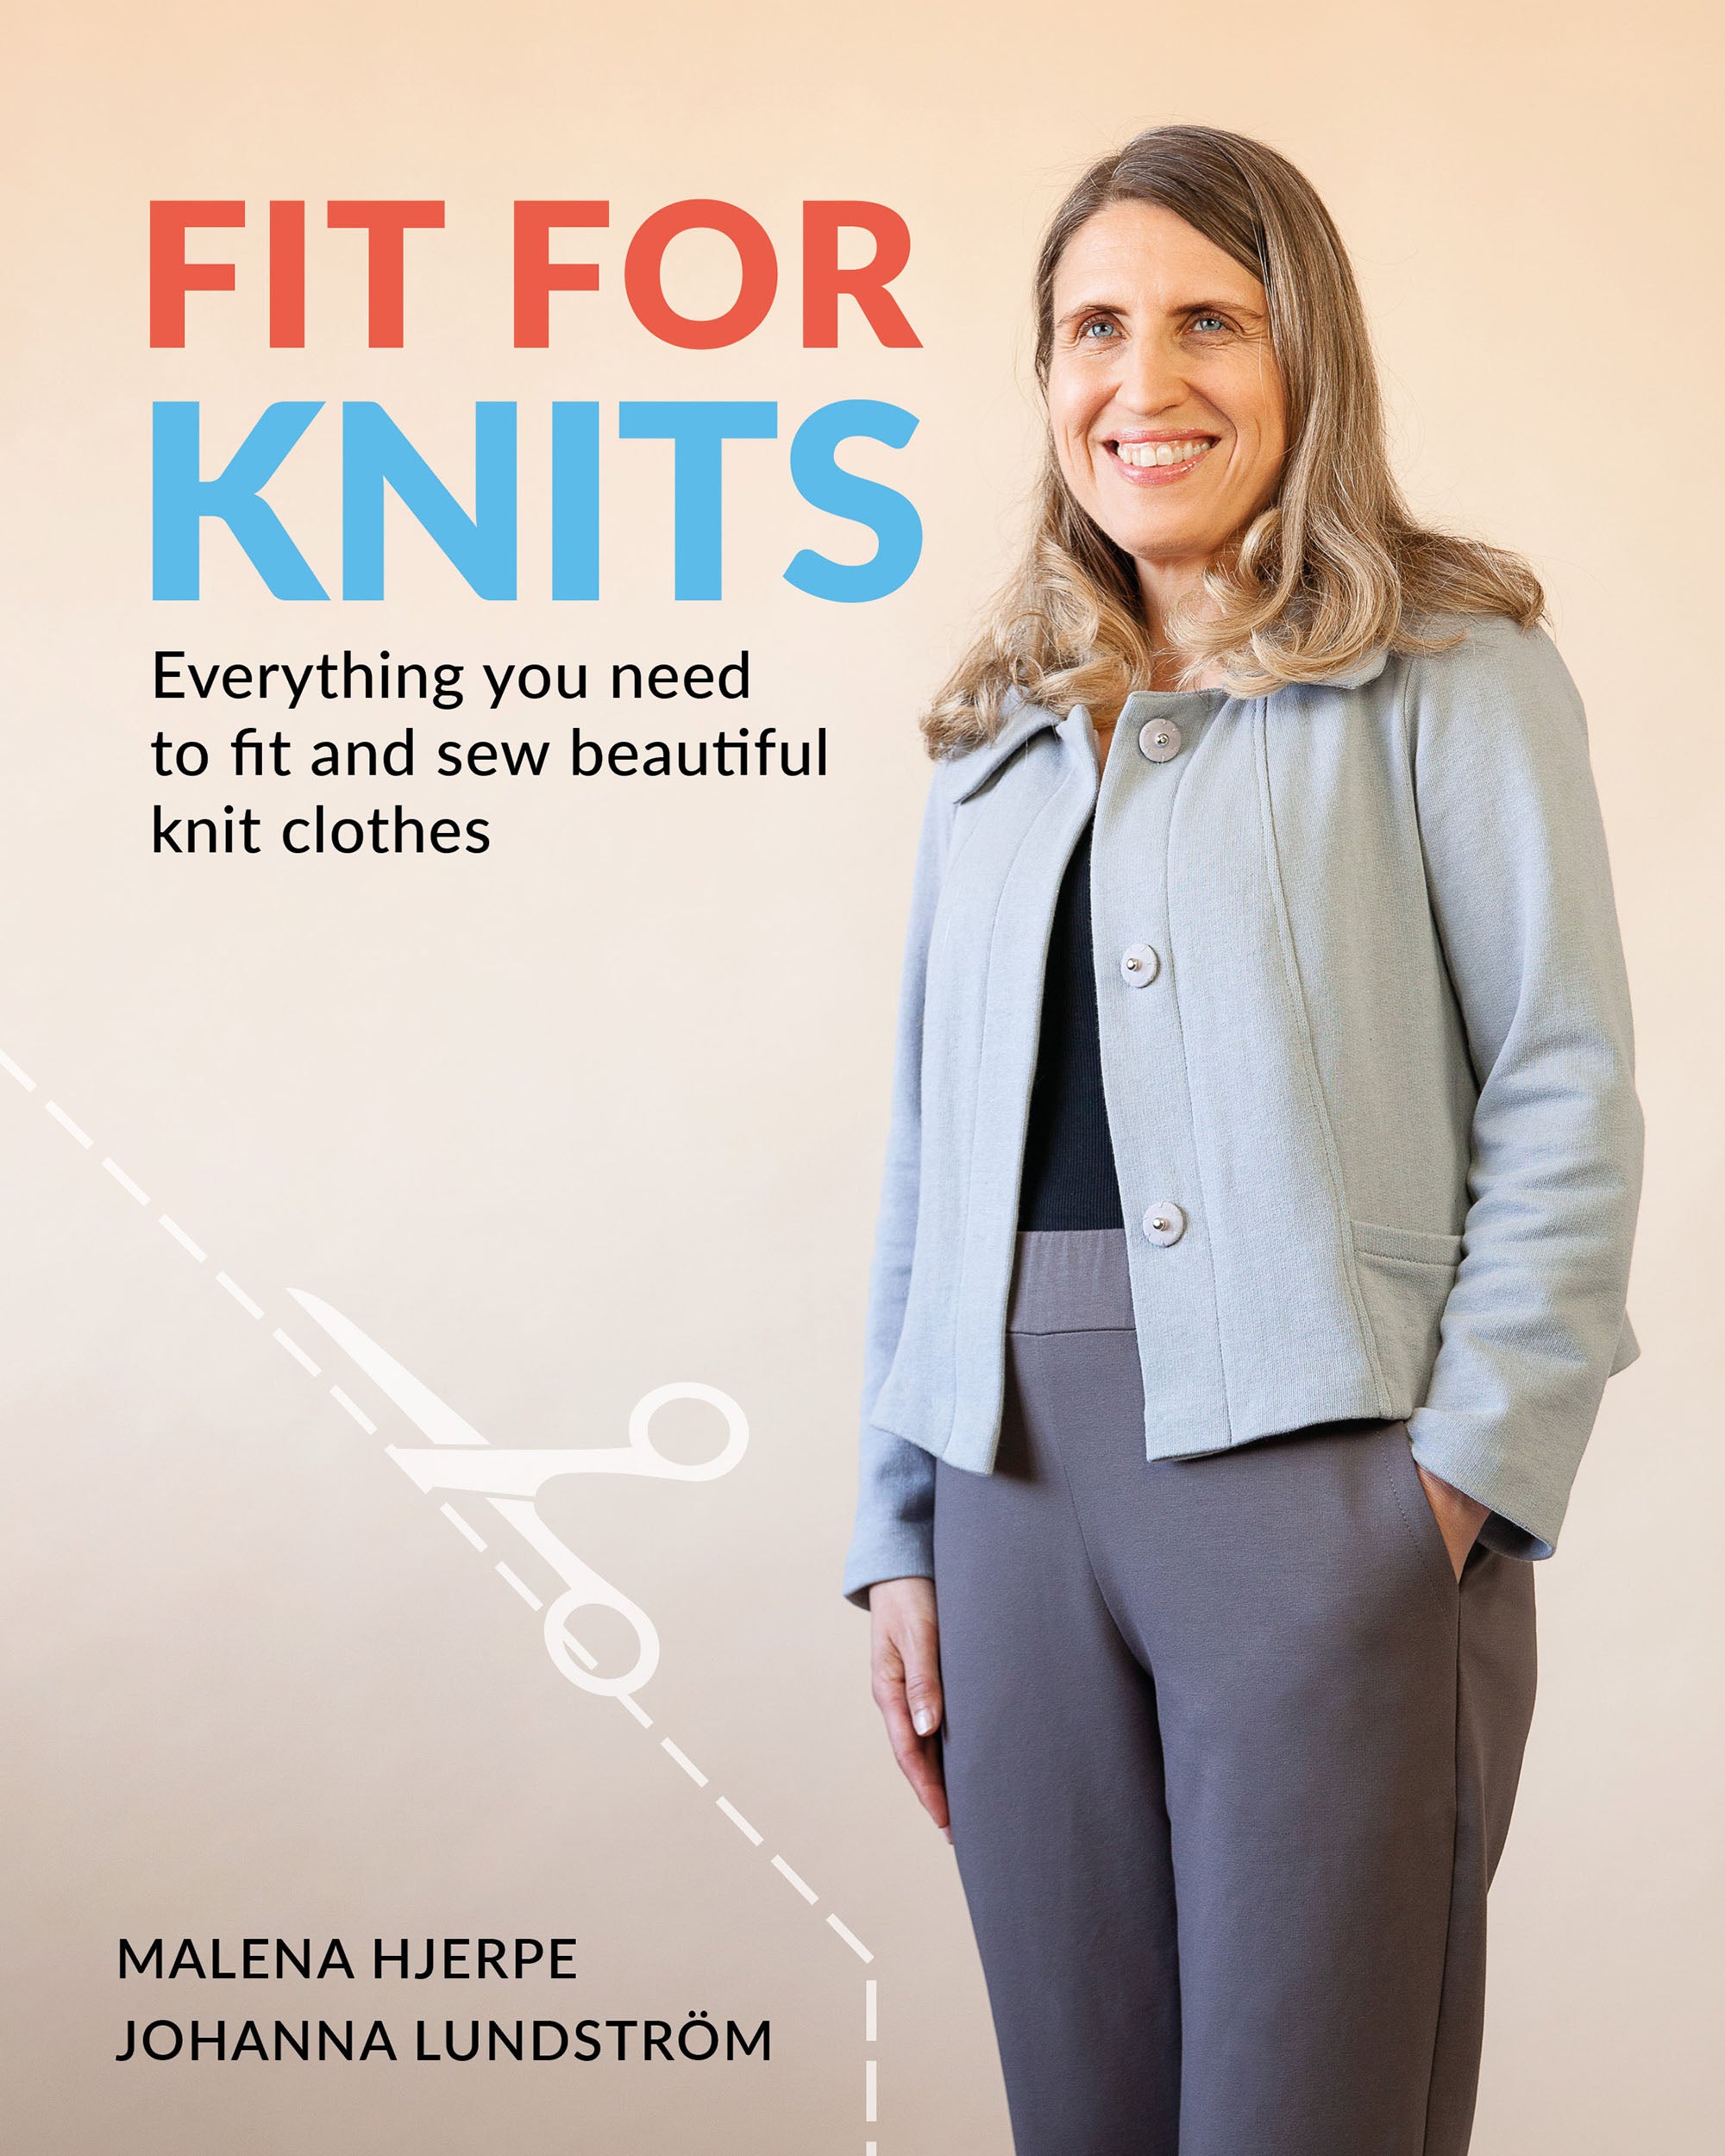 Martine Plaid Sweater Knit Ski Bum - over-skirt for leggings